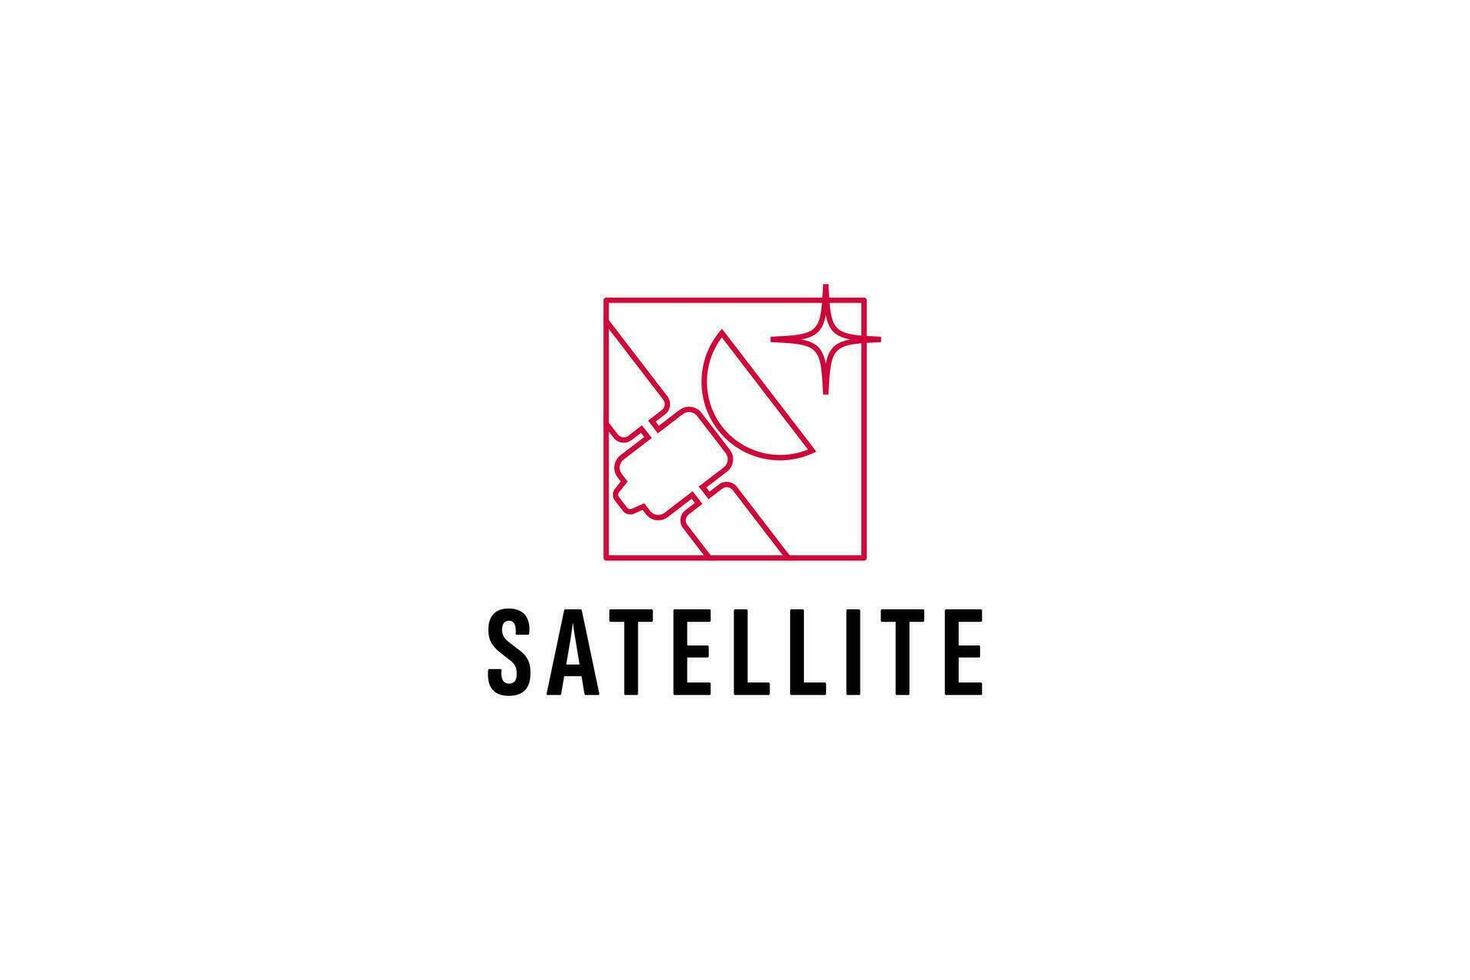 satellitare logo vettore icona illustrazione